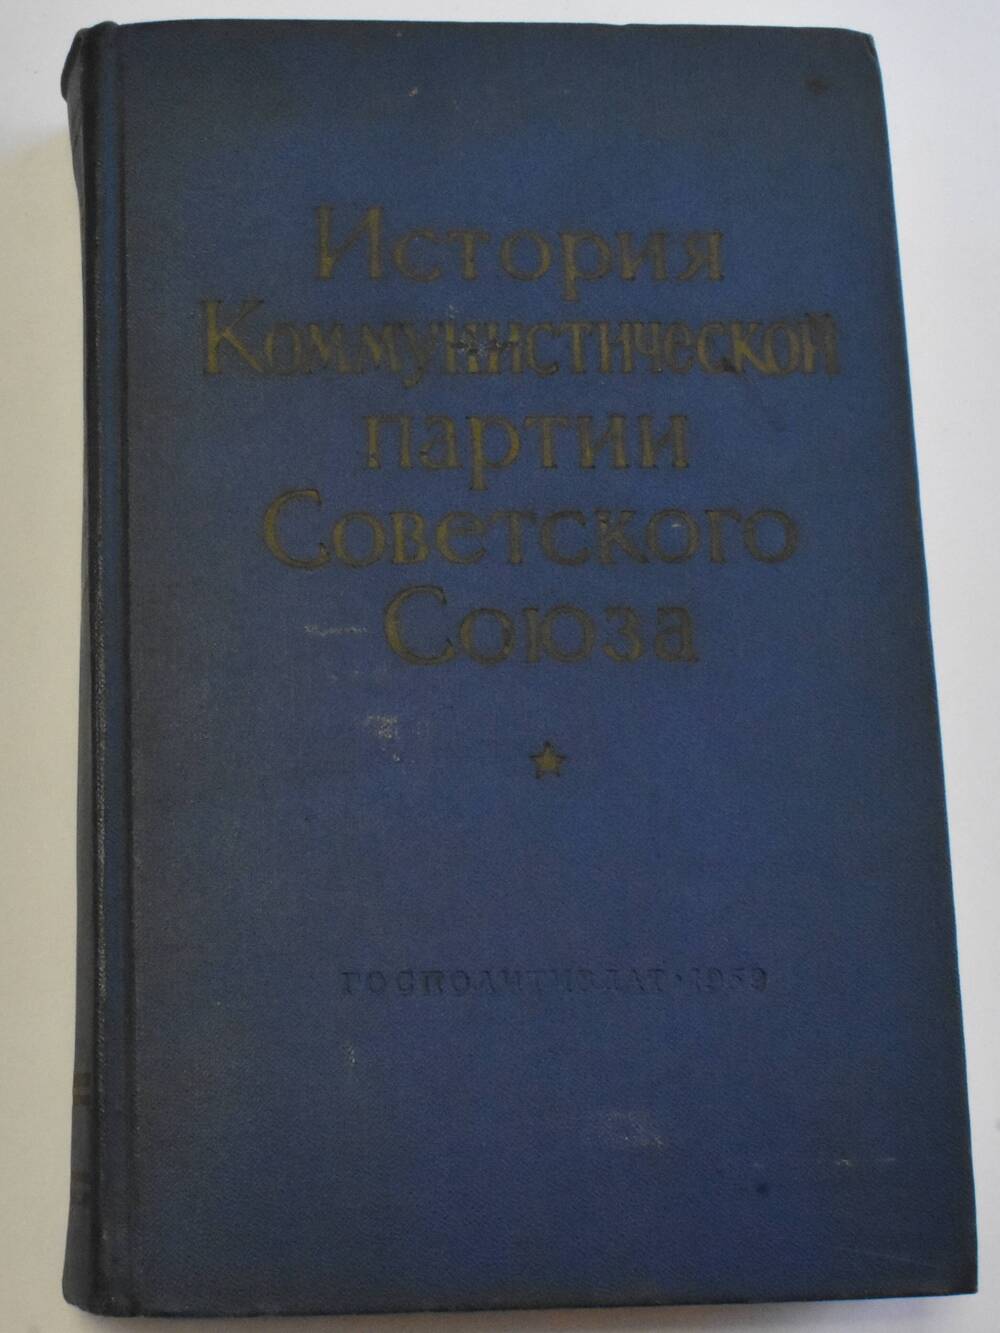 Книга История Коммунистической партии Советского Союза
Государственное издательство политической литературы Москва 1959